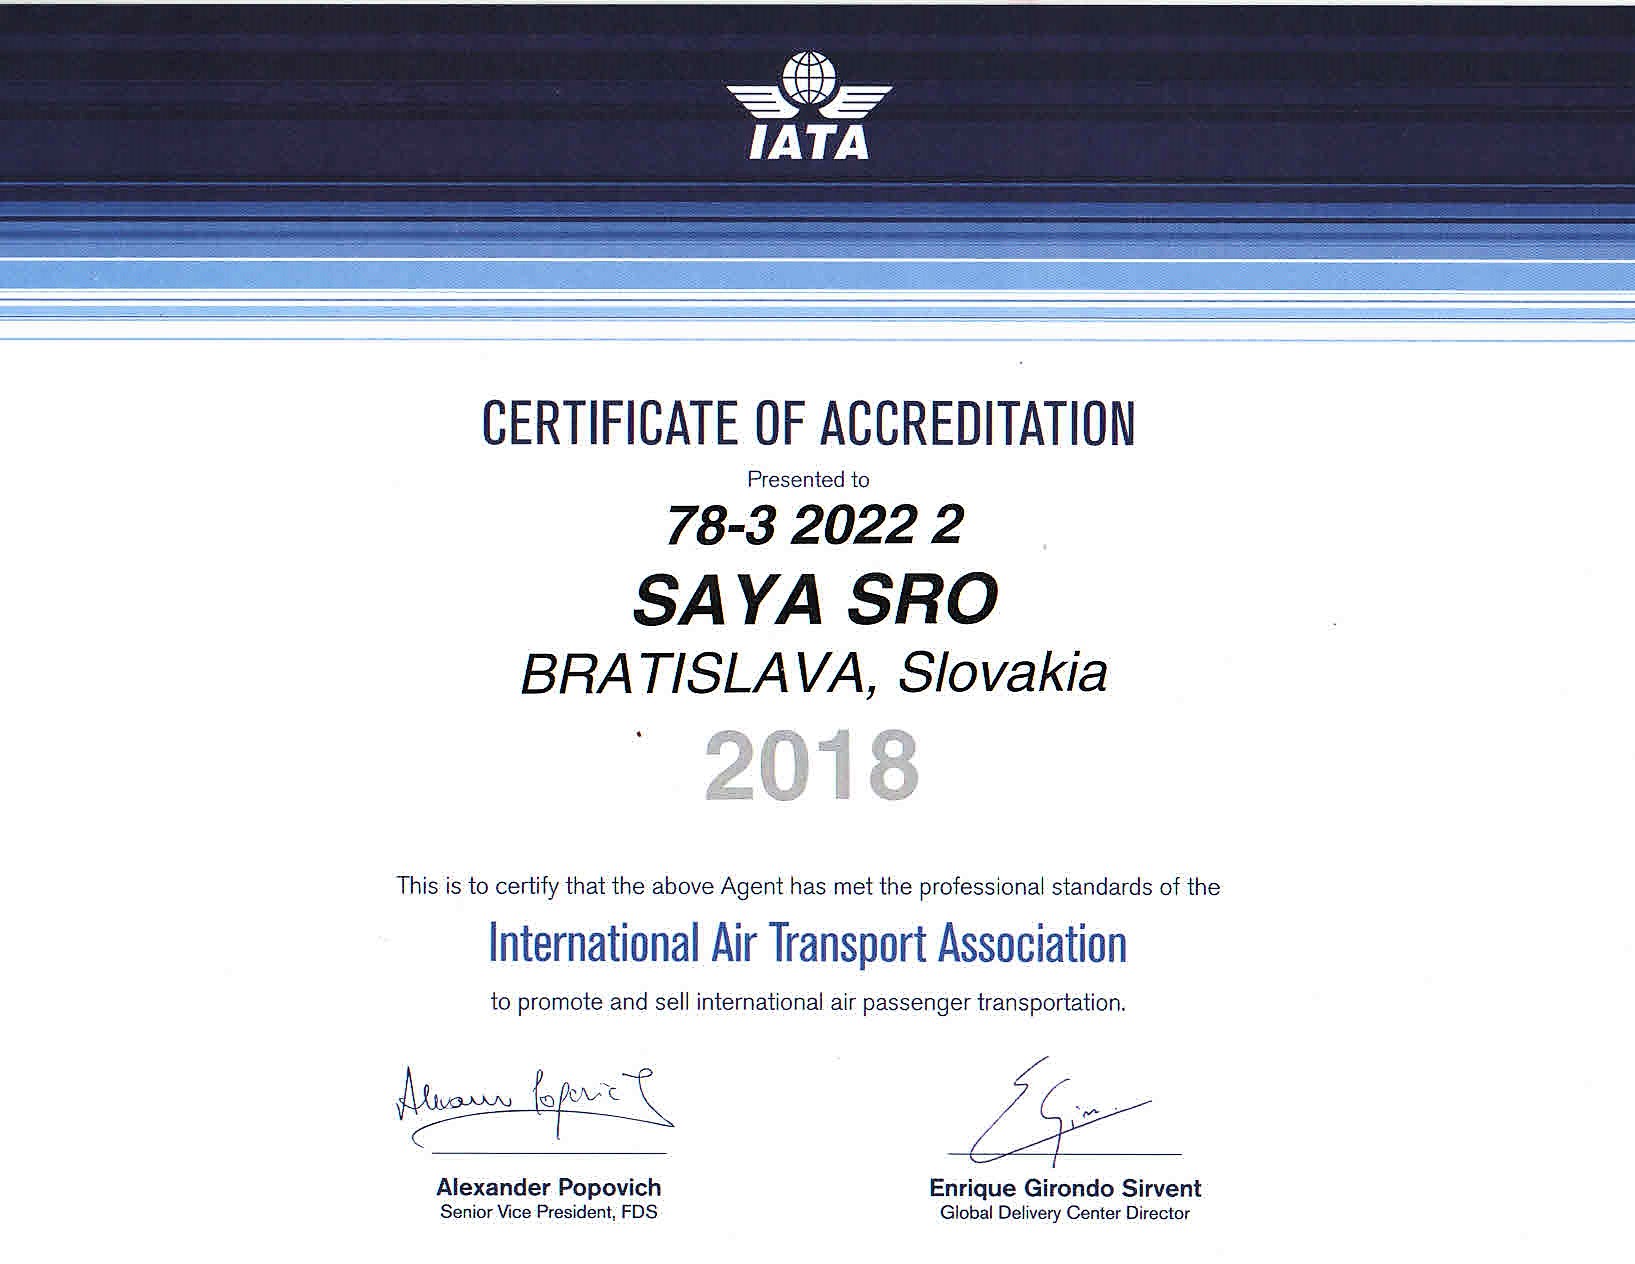 IATA 2018